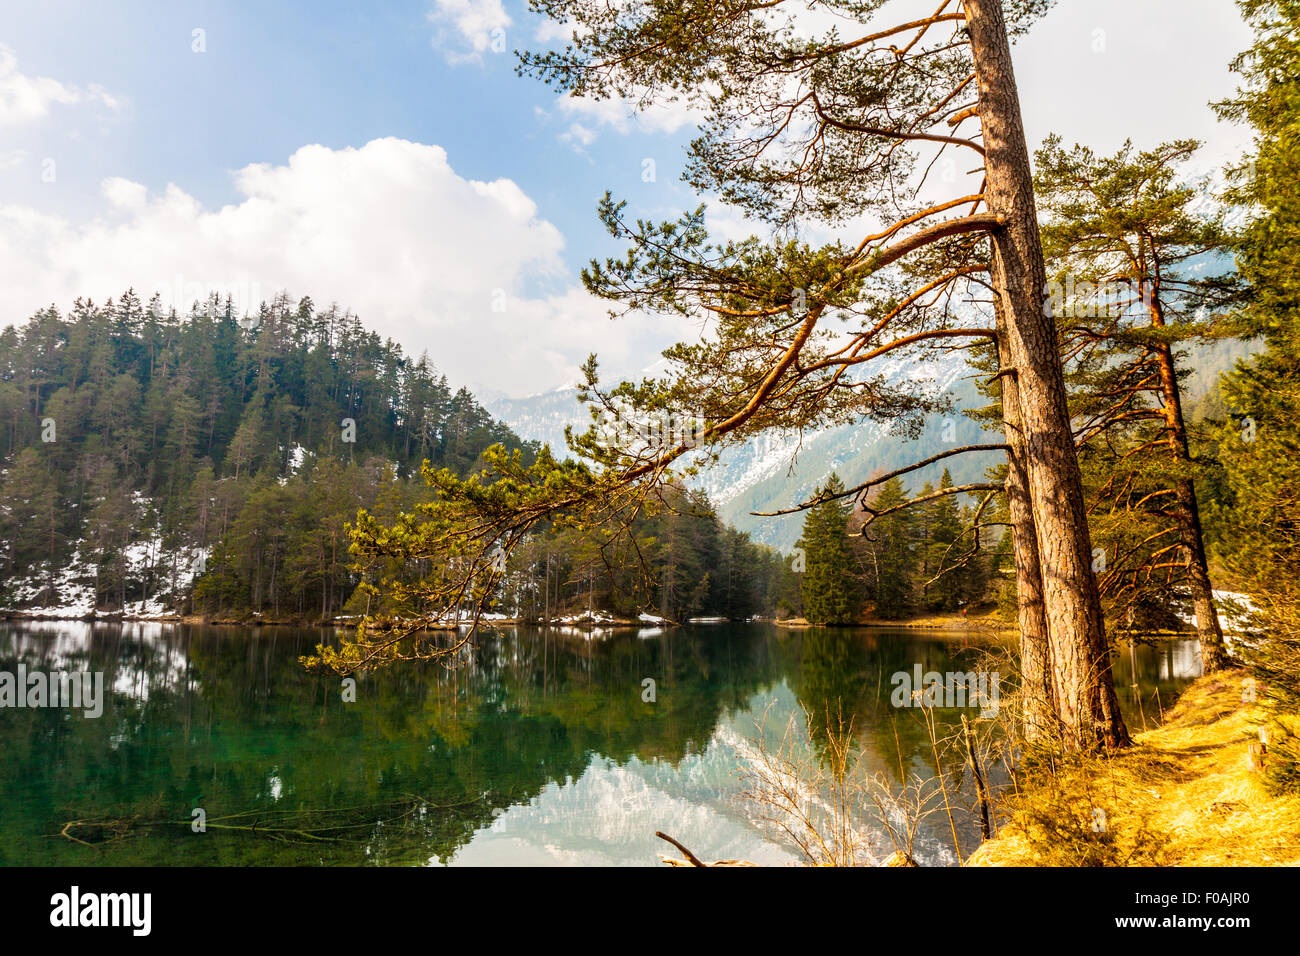 Majestic Mountain Lake dans la région de alpes autrichiennes Fernsteinsee Banque D'Images